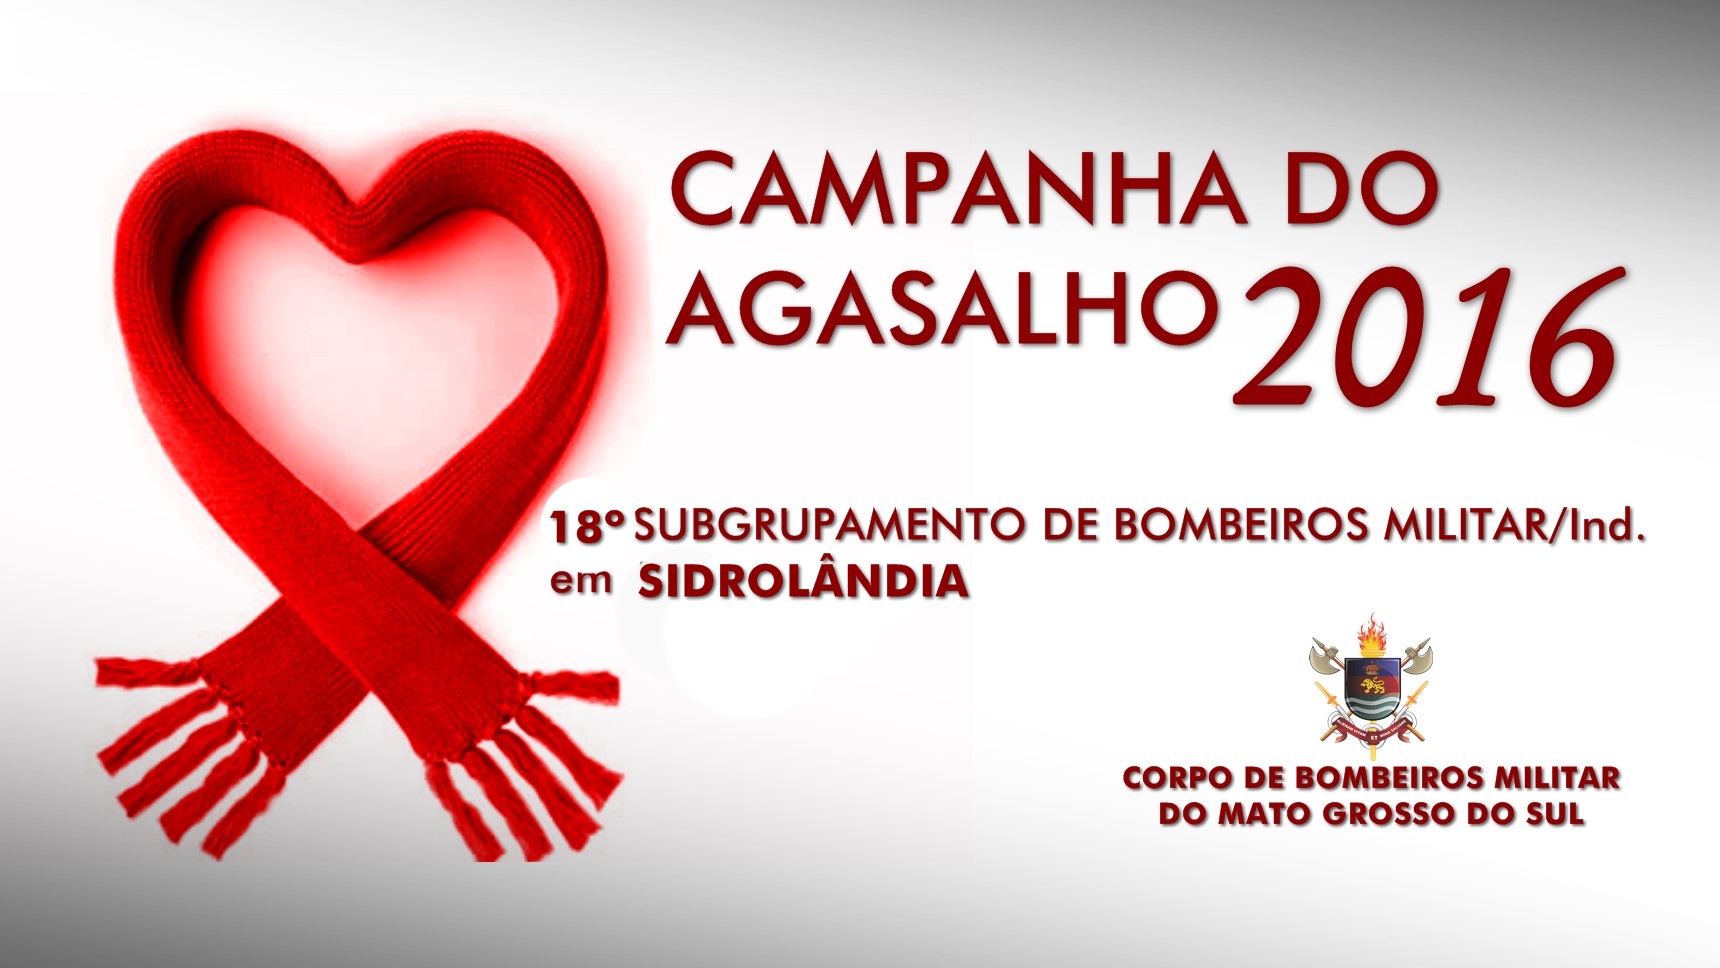 Campanha do Agasalho 2016 - 18º SGBM Sidrolândia